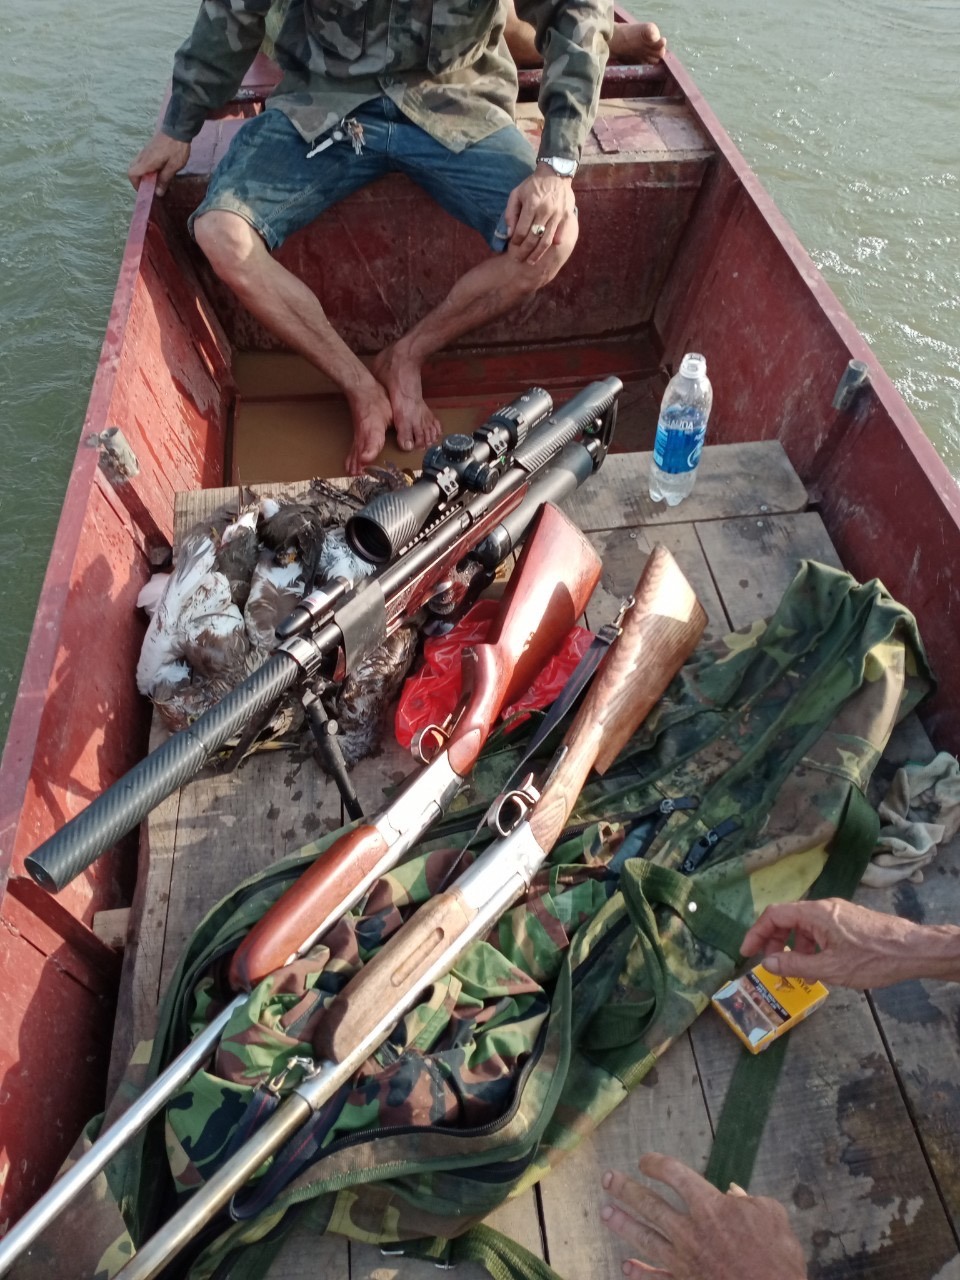 Cả một khoang thuyền và chim “chiến lợi phẩm” của thợ săn mà nhóm phóng viên đã chứng kiến. Ảnh: Lãng Quân